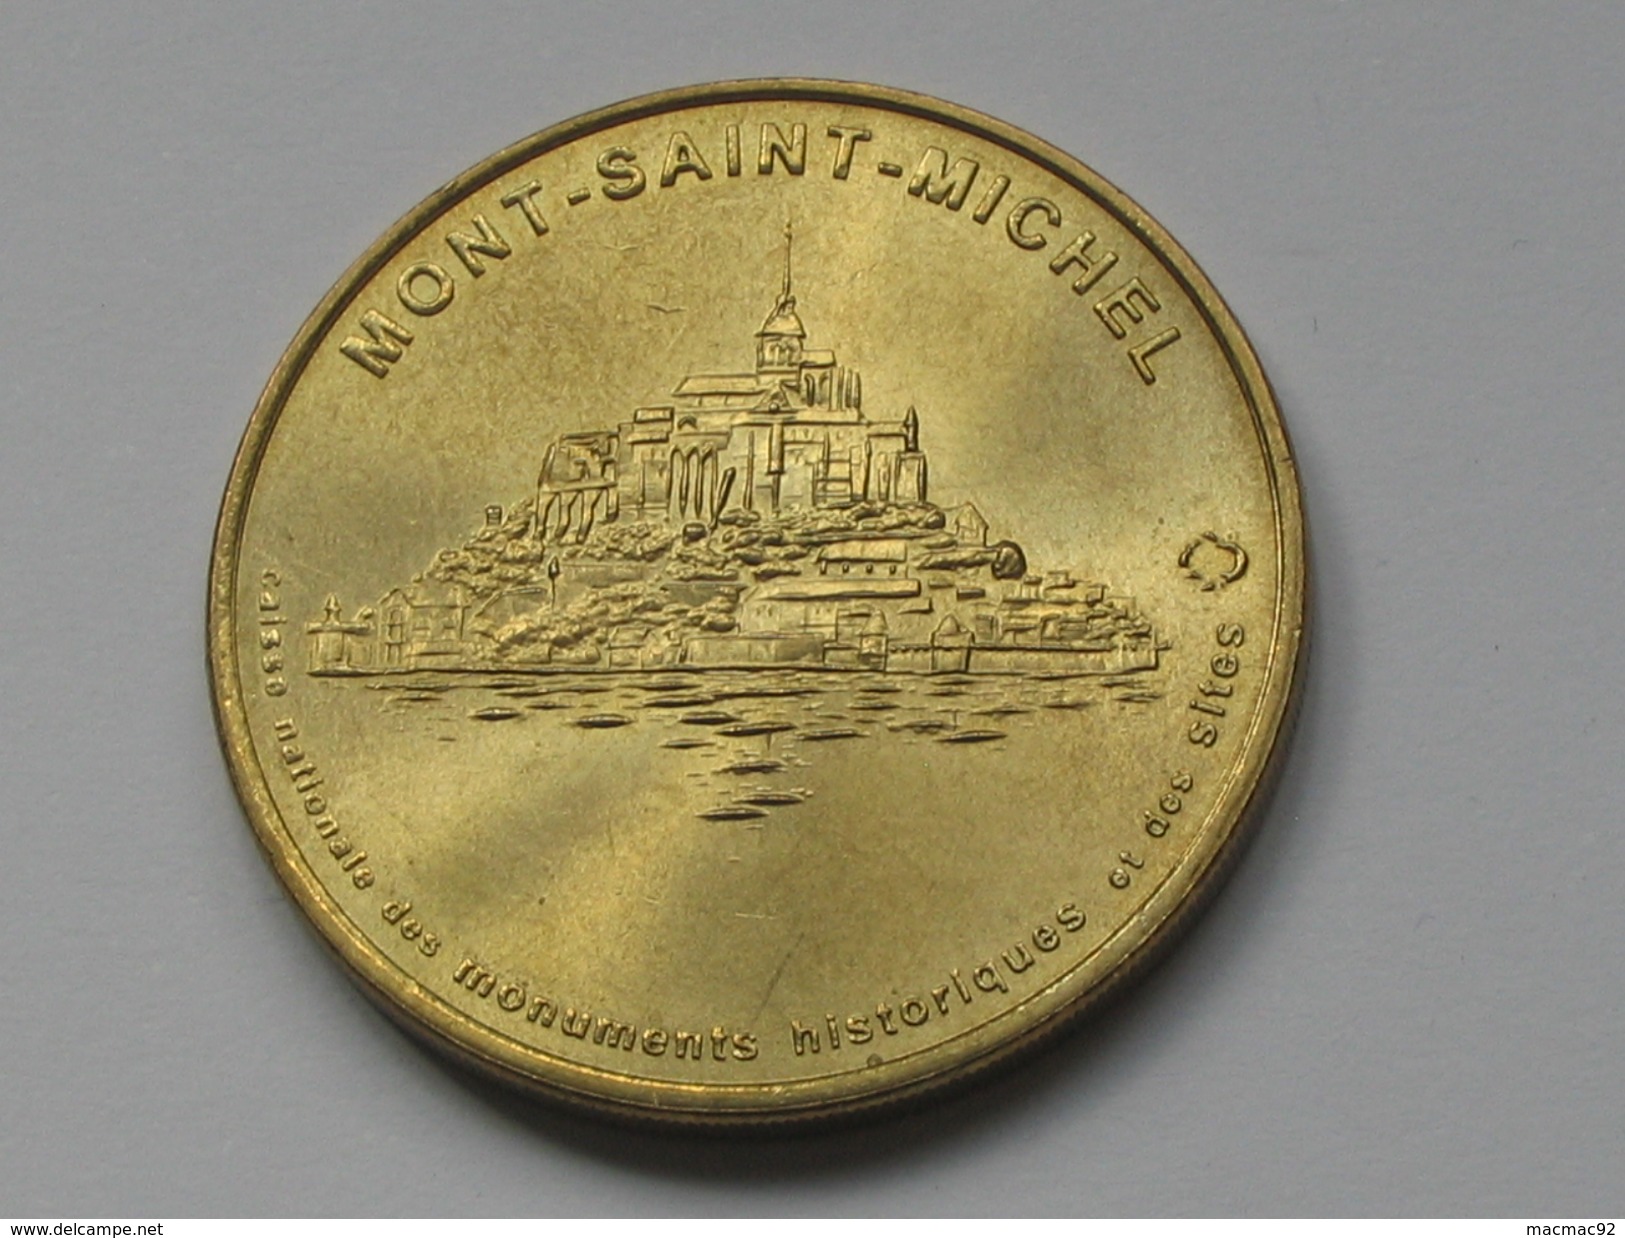 Monnaie De Paris 1997 - MONT-SAINT MICHEL    **** EN ACHAT IMMEDIAT  **** - Non-datés